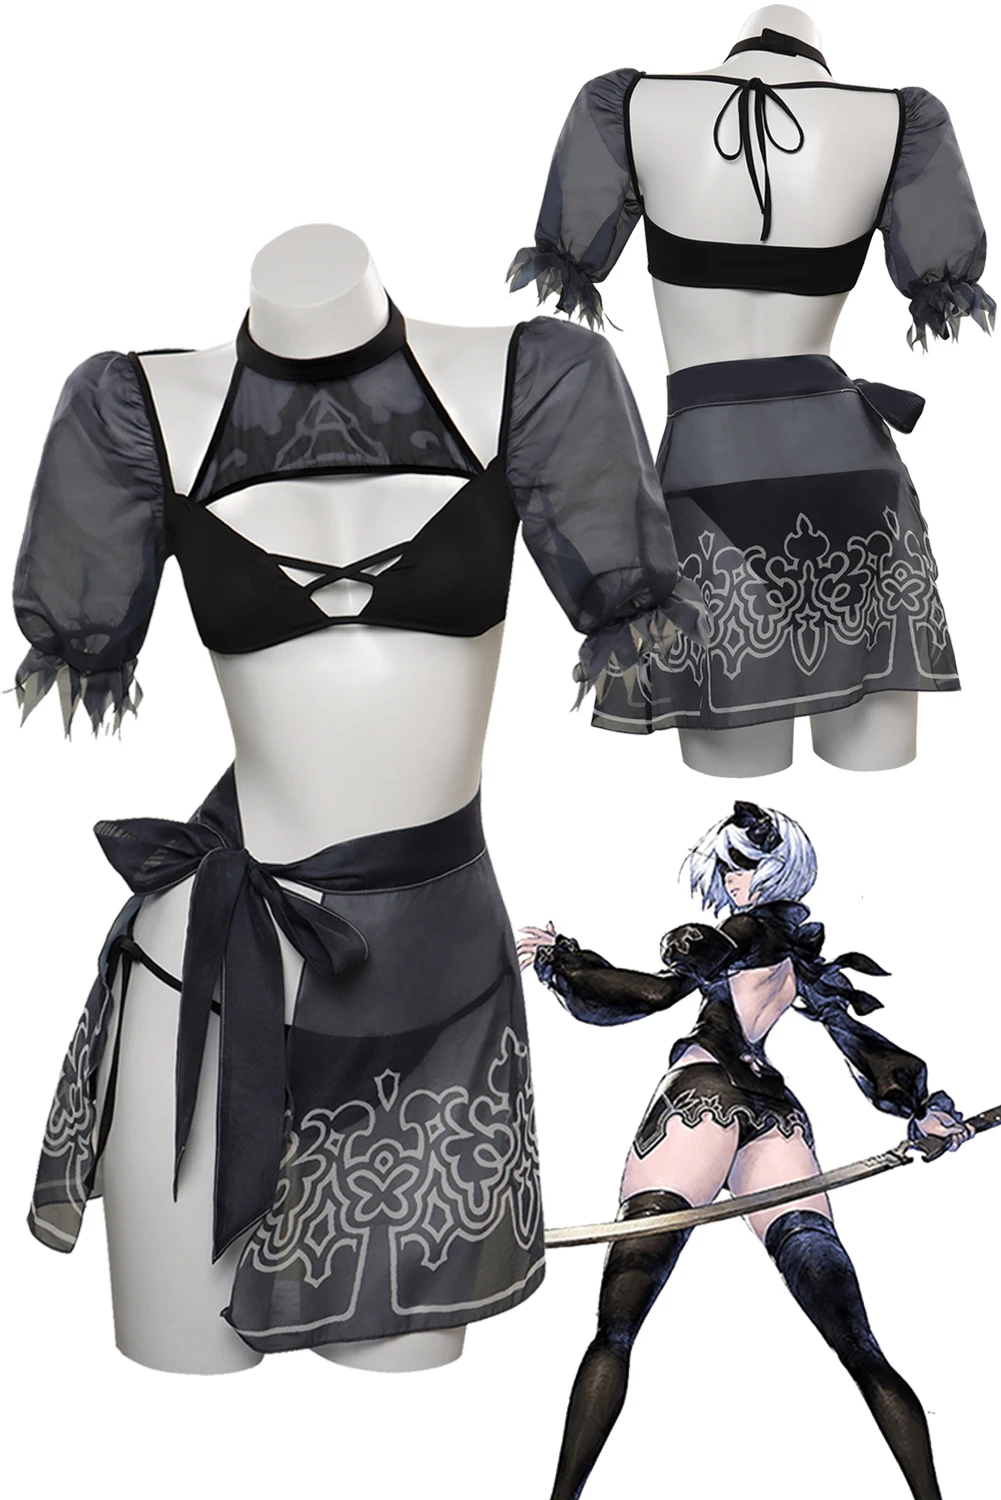 

YoRHa 2B Косплей Купальник, женский костюм, Аниме игра NieR No.2 Тип B, ролевые фантазии, наряды, Хэллоуин, искусственная ткань для ролевых игр